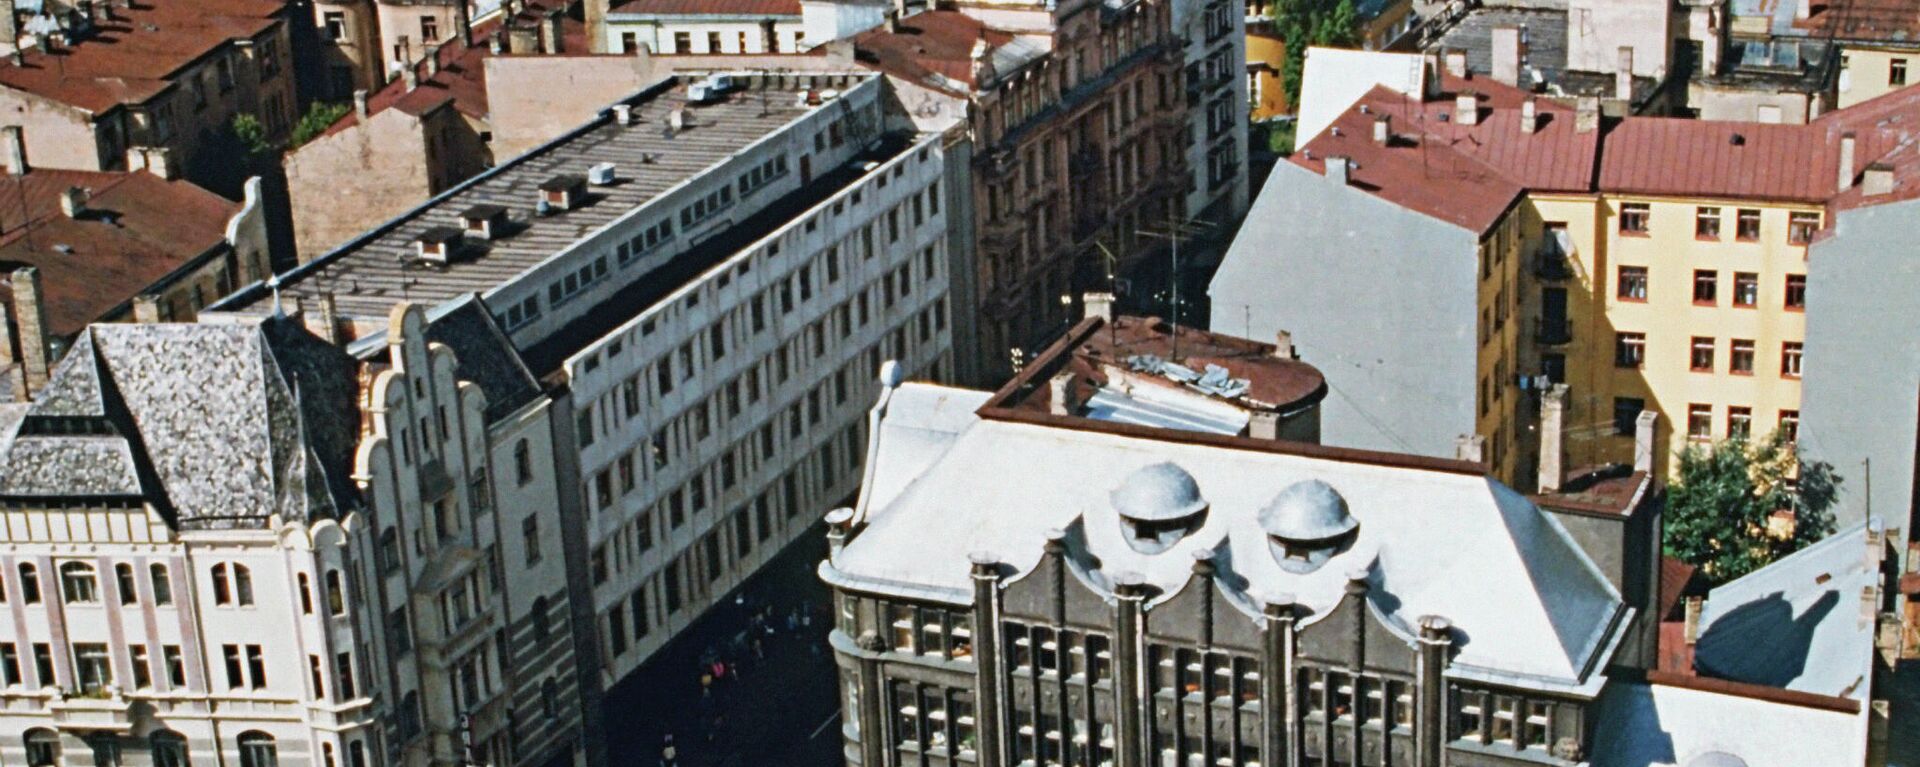 Панорама города Рига в Латвии, 1990 год - Sputnik Латвия, 1920, 19.09.2021